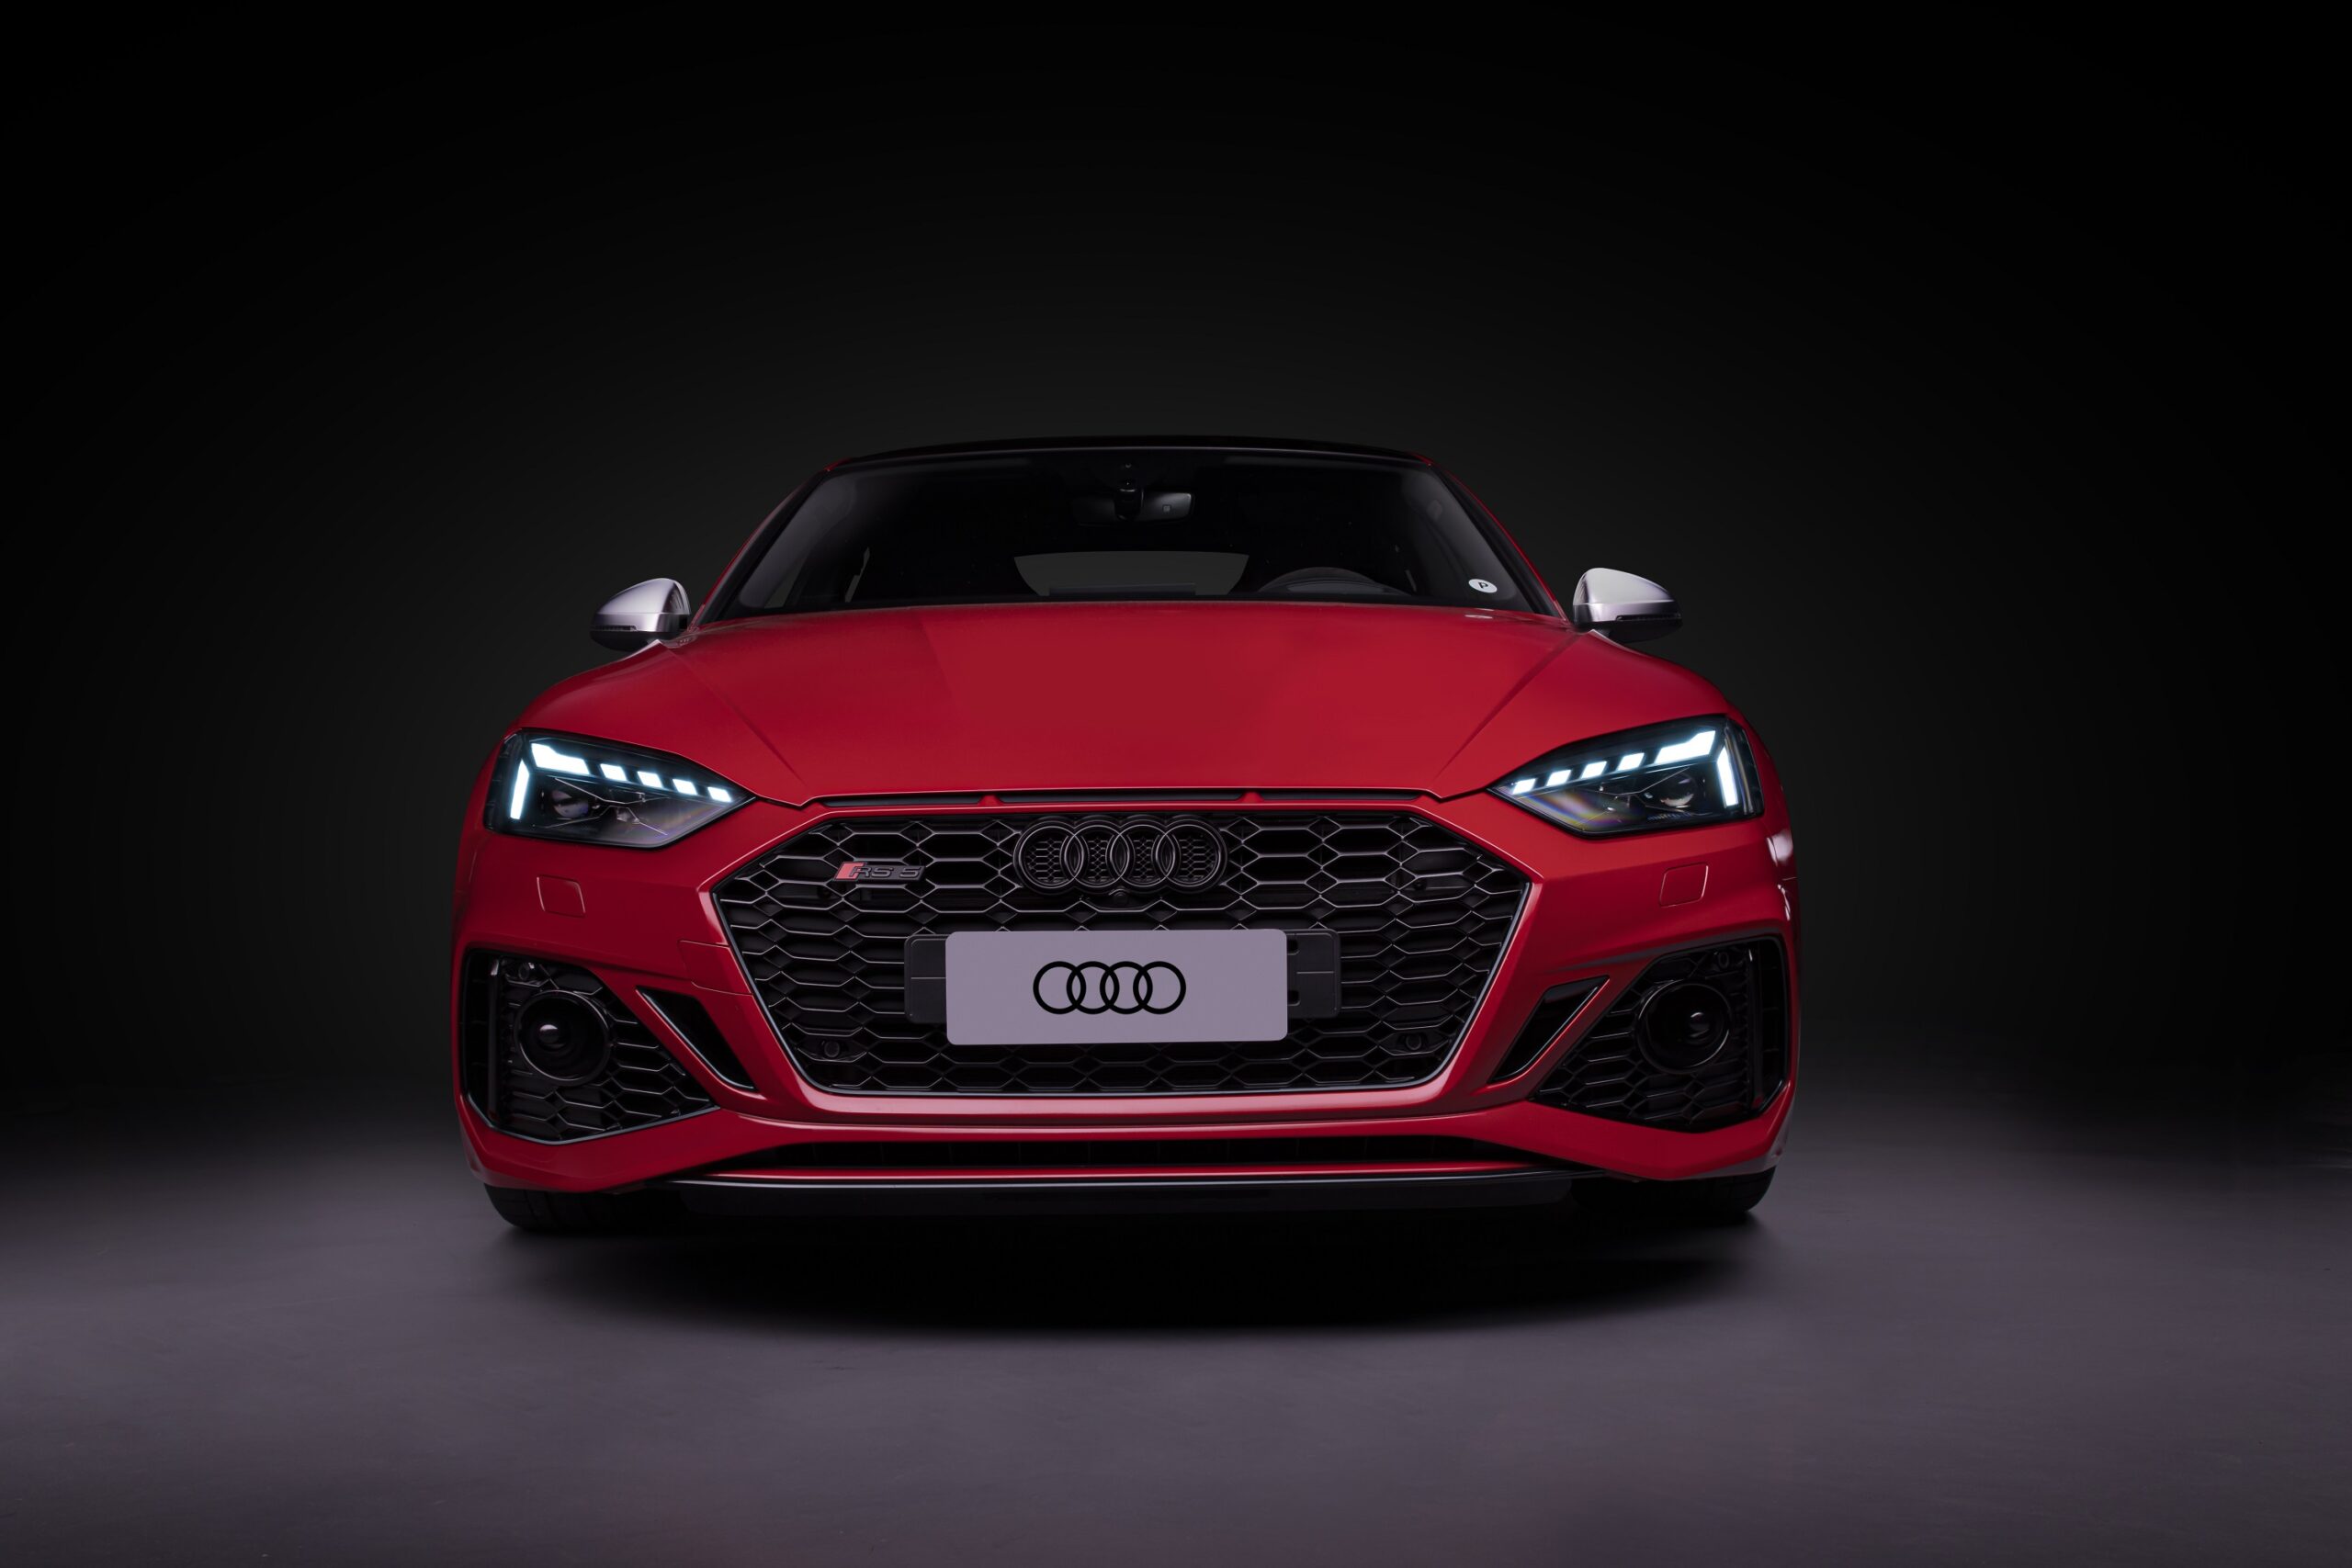 850.000 R$, der Preis für Audi-Sportwagen – AutoIndústria